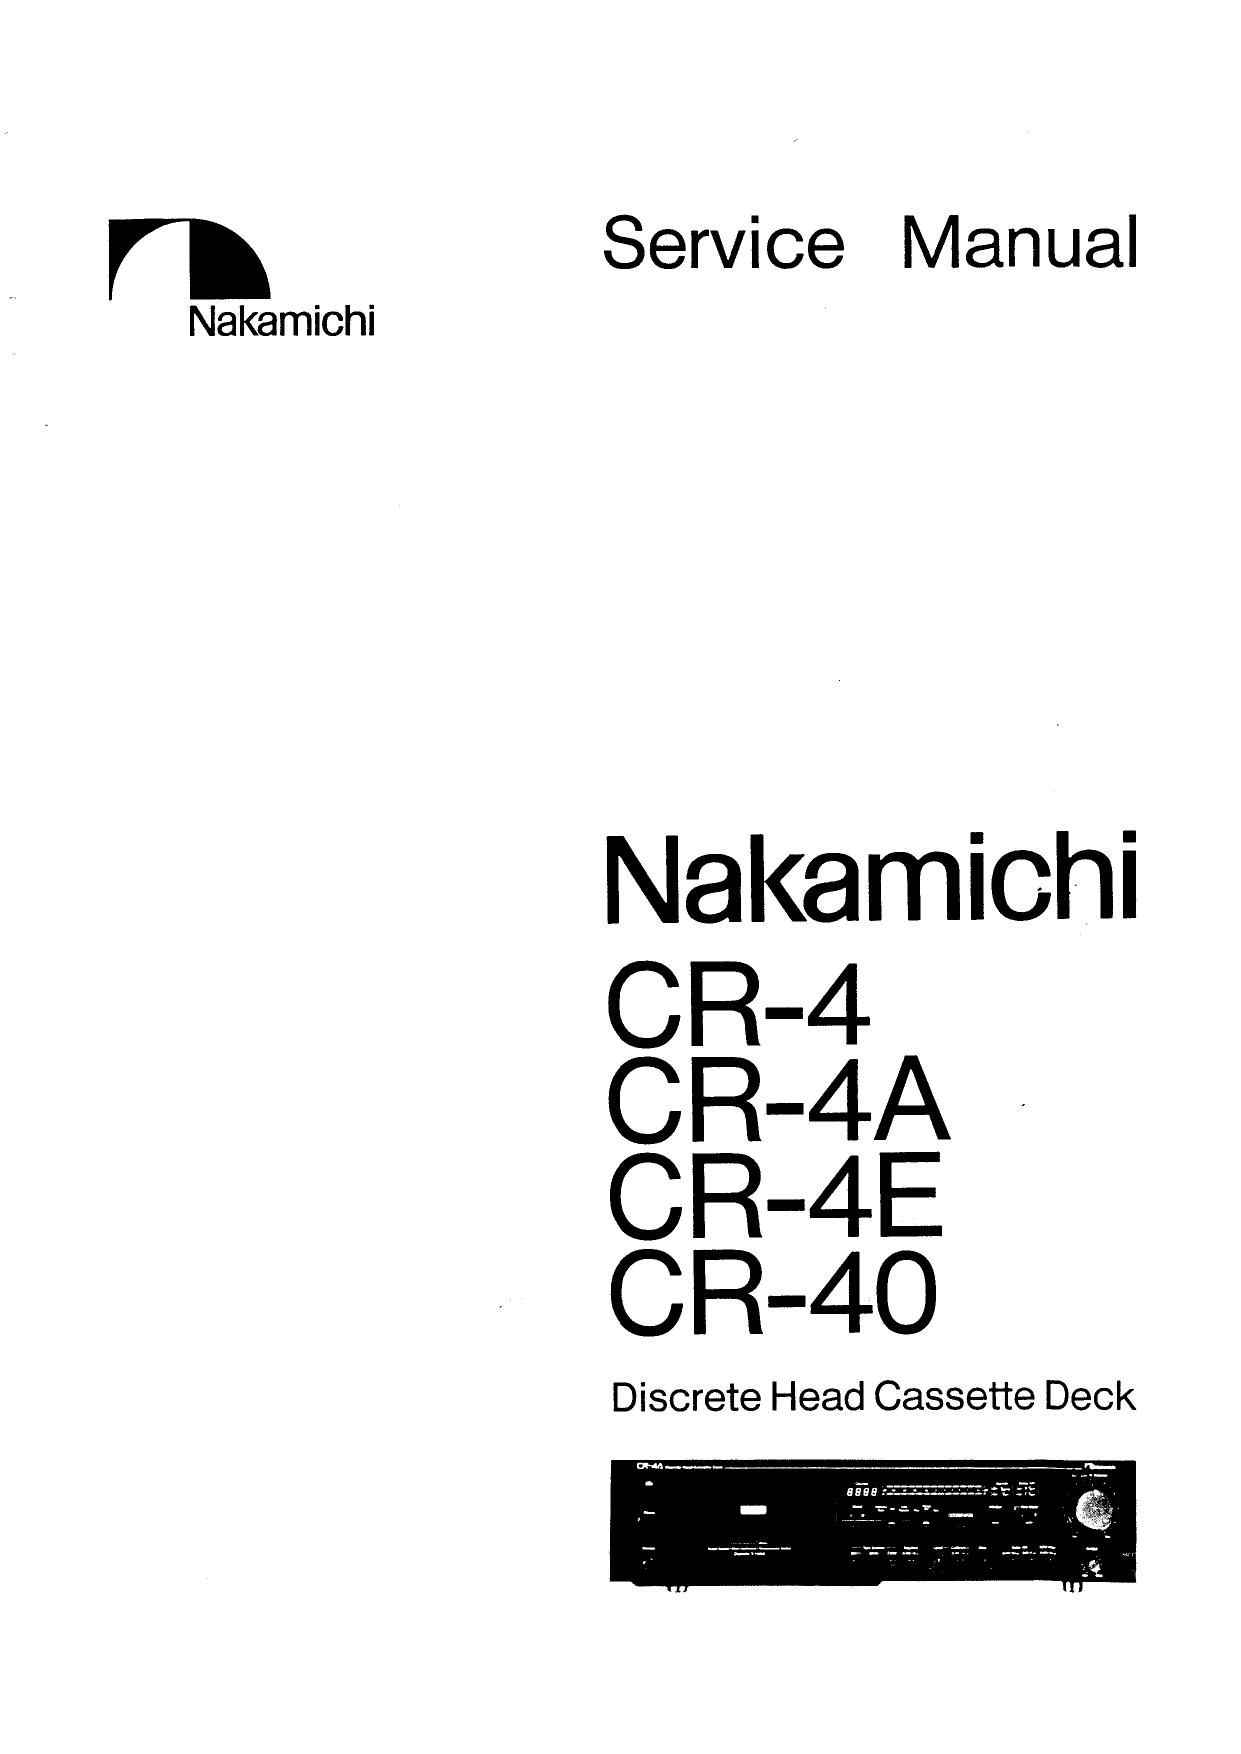 Nakamichi CR 40 Service Manual